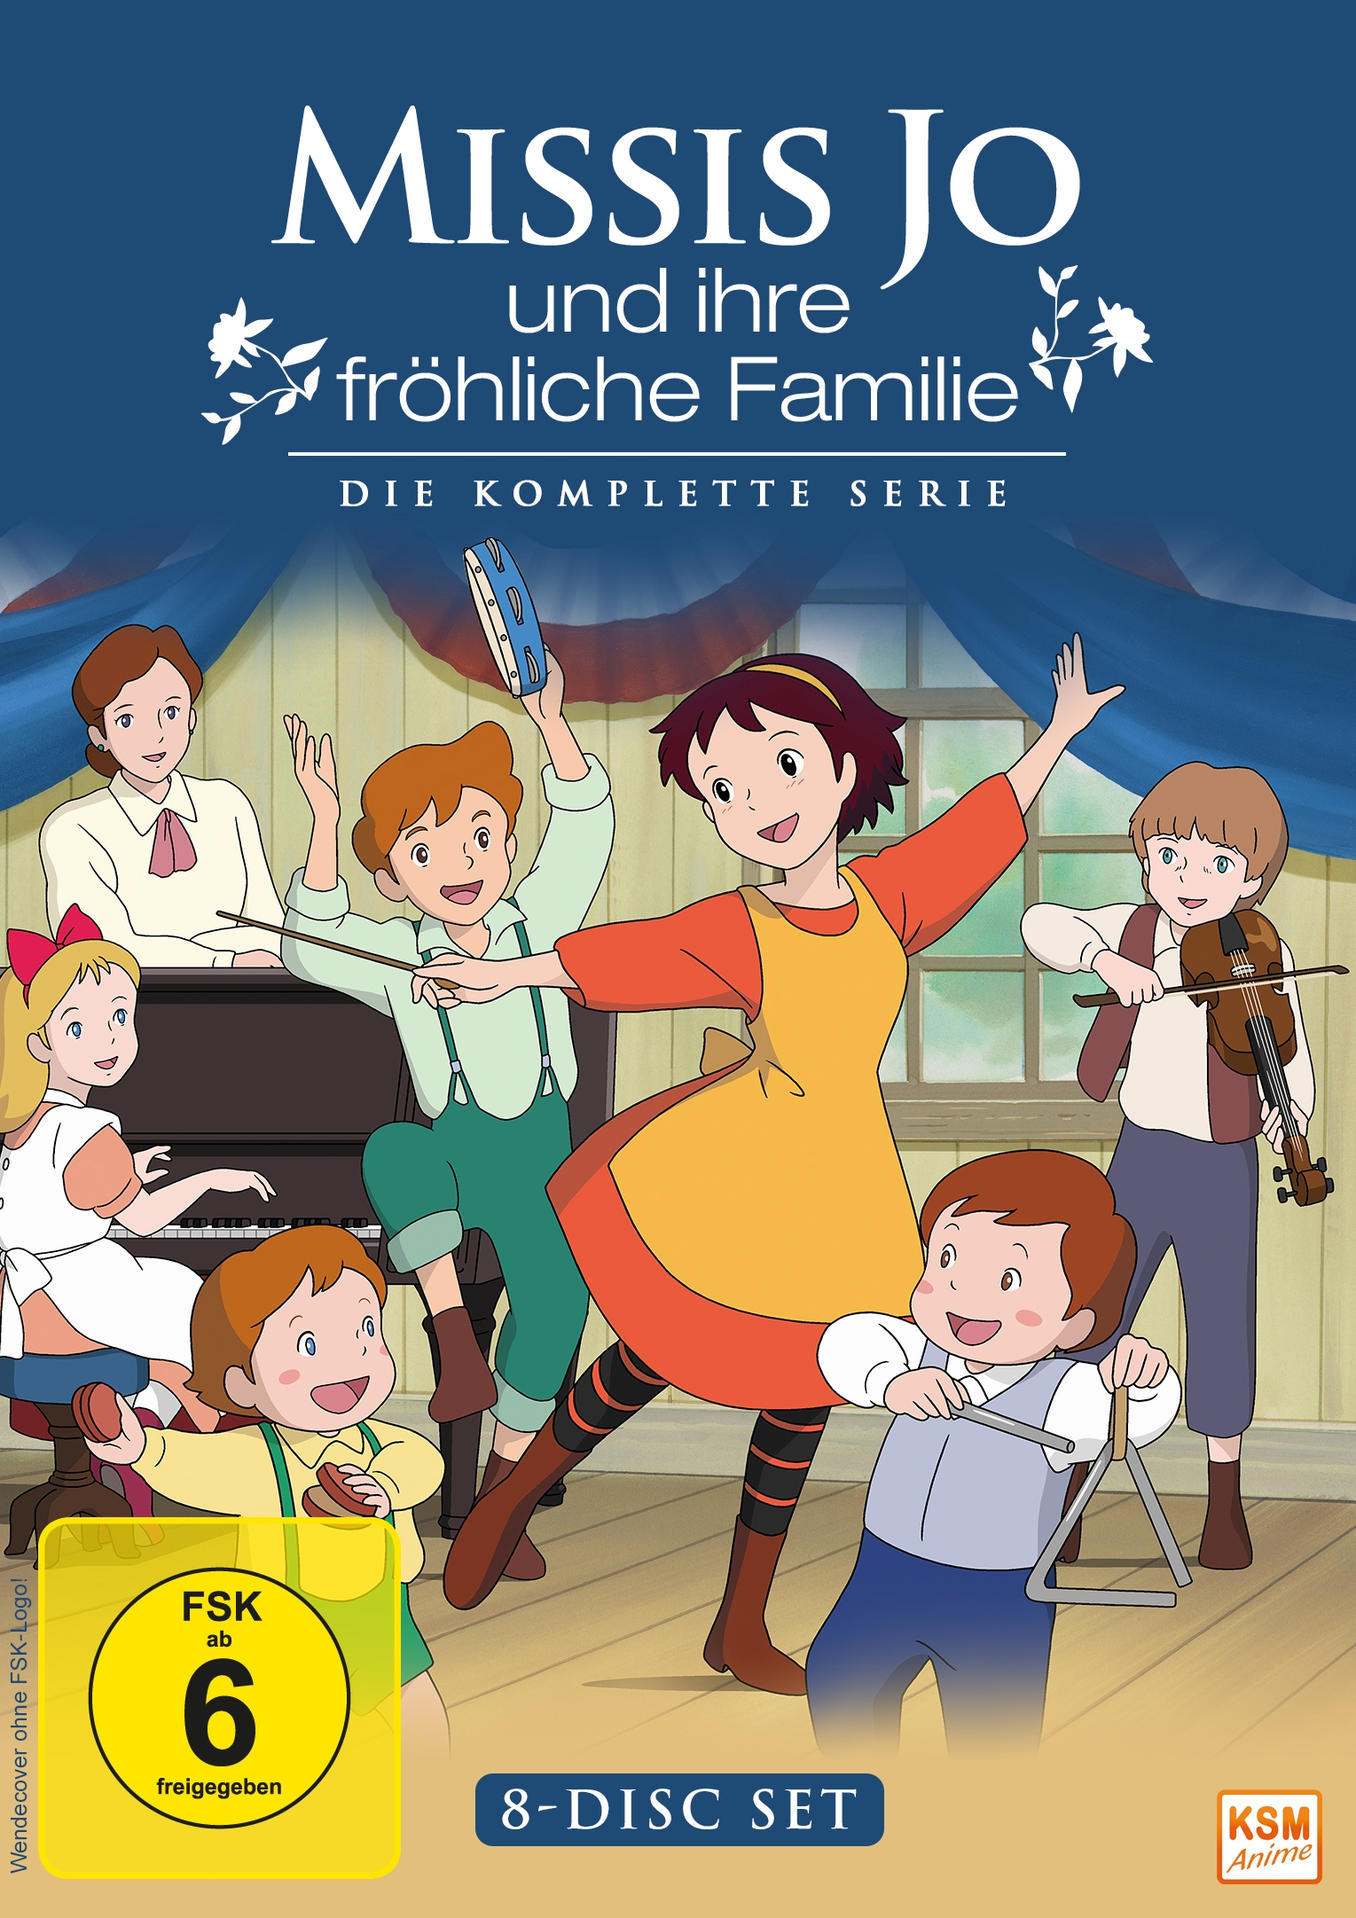 Jo komplette und Familie fröhliche Missis Die - Serie DVD ihre